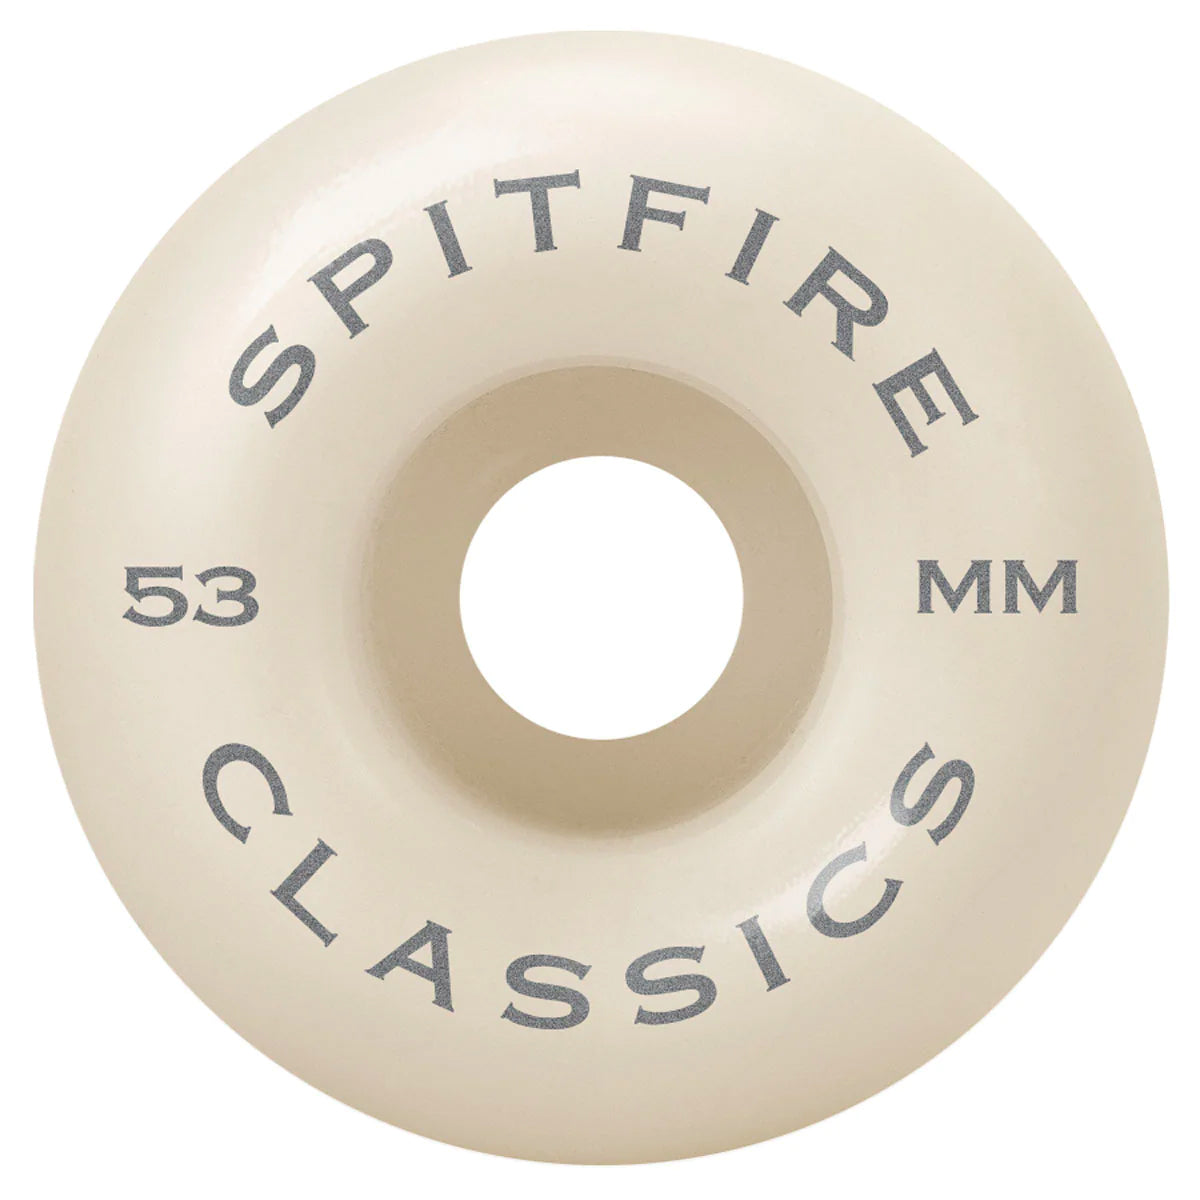 Spitfire Classics 99d - 53mm